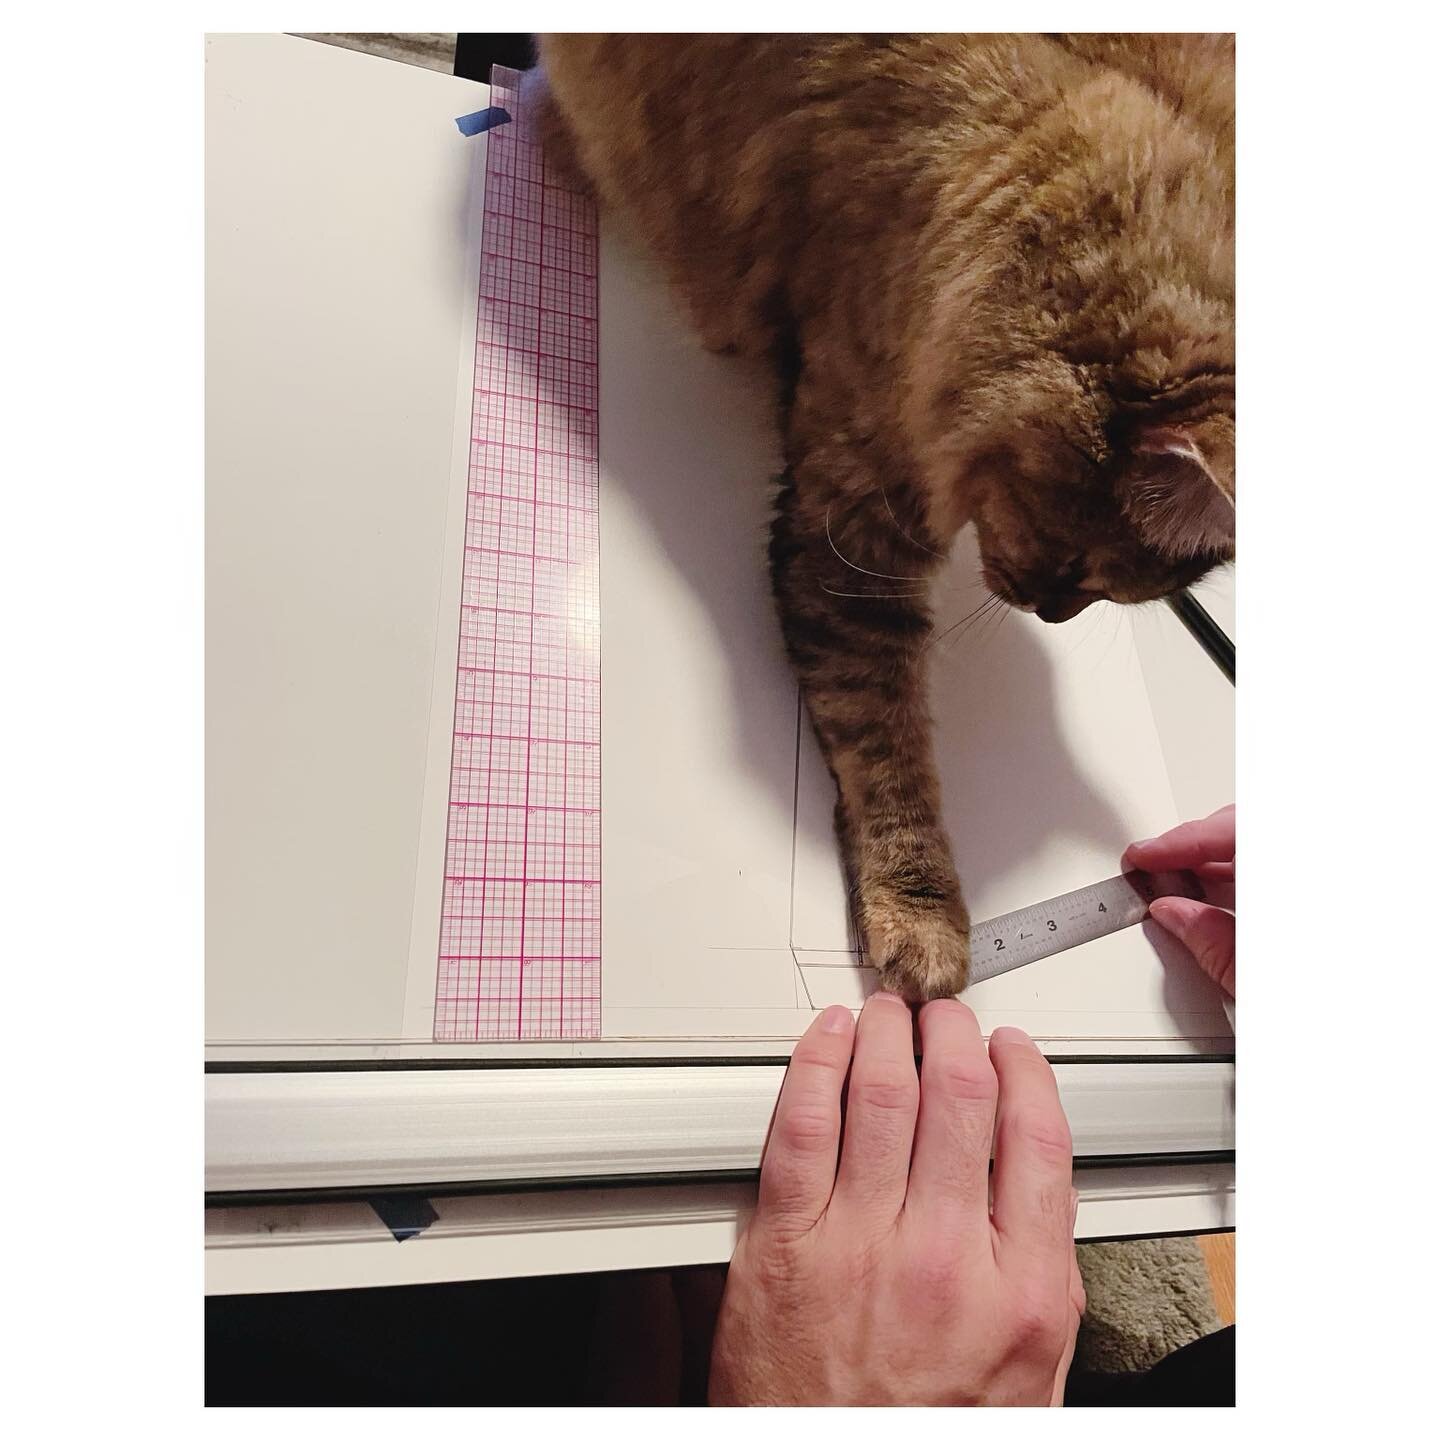 A very helpful studio cat.